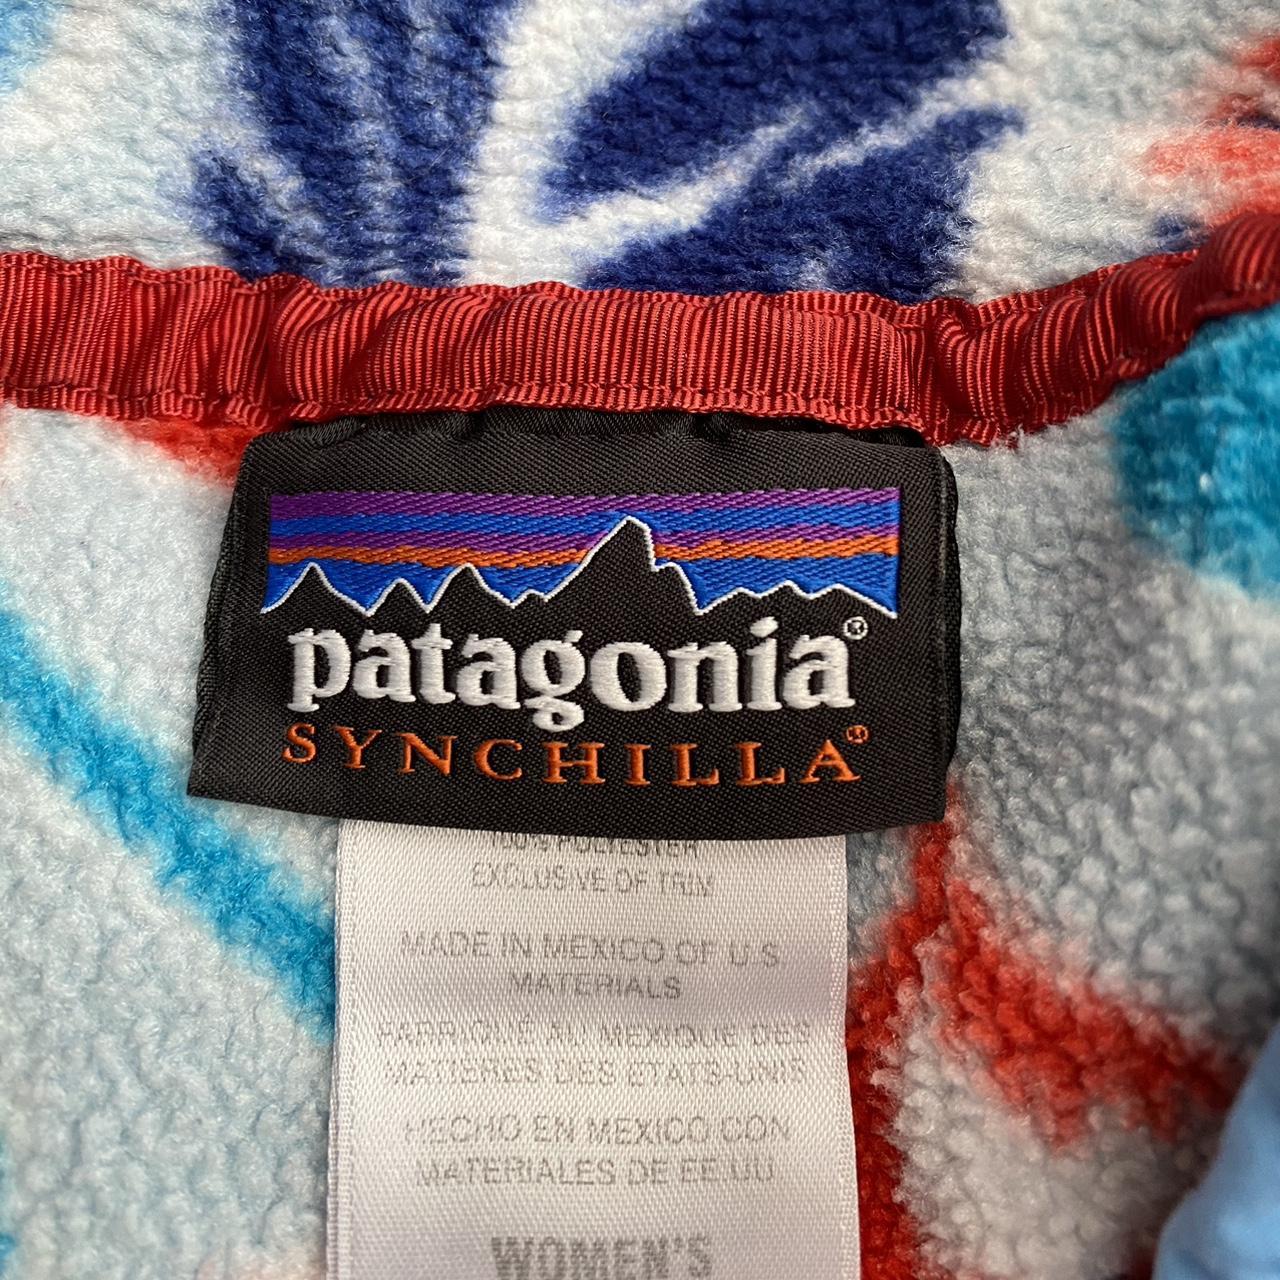 Patagonia Synchilla Patterned Fleece. Women’s... - Depop